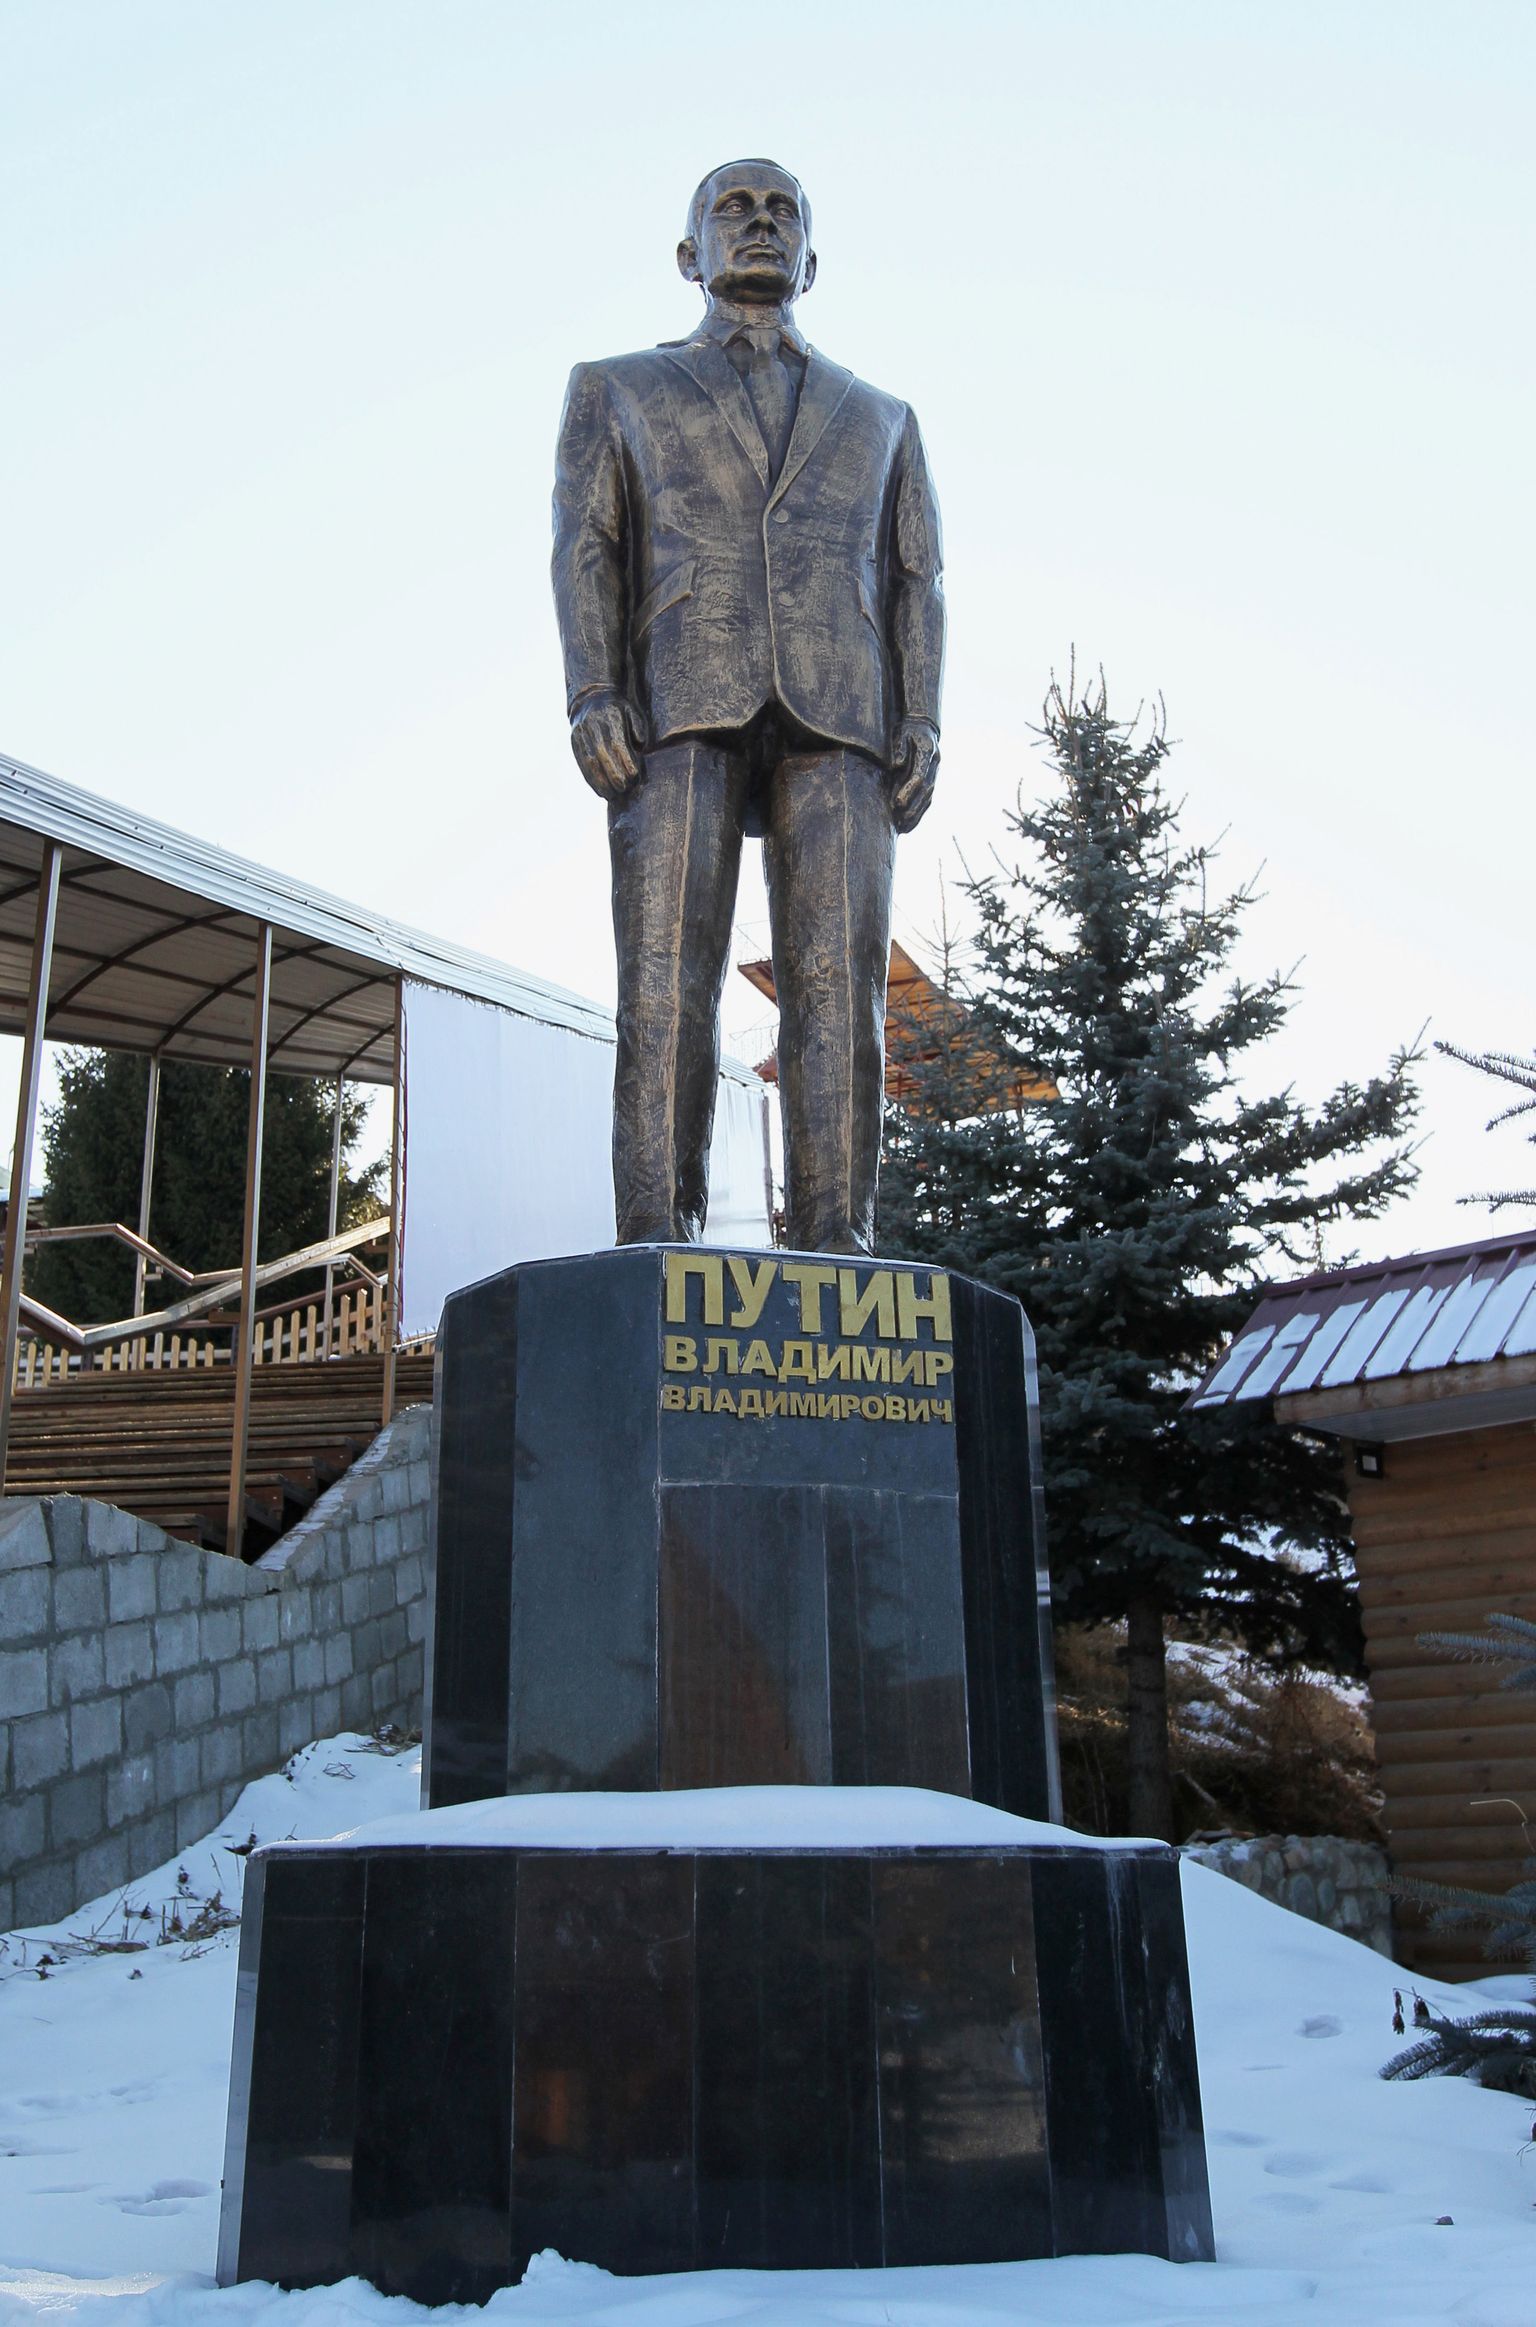 Venemaa presidendi Vladimir Putin kuju Kõrgõzstani Zili mäesuusakeskuses